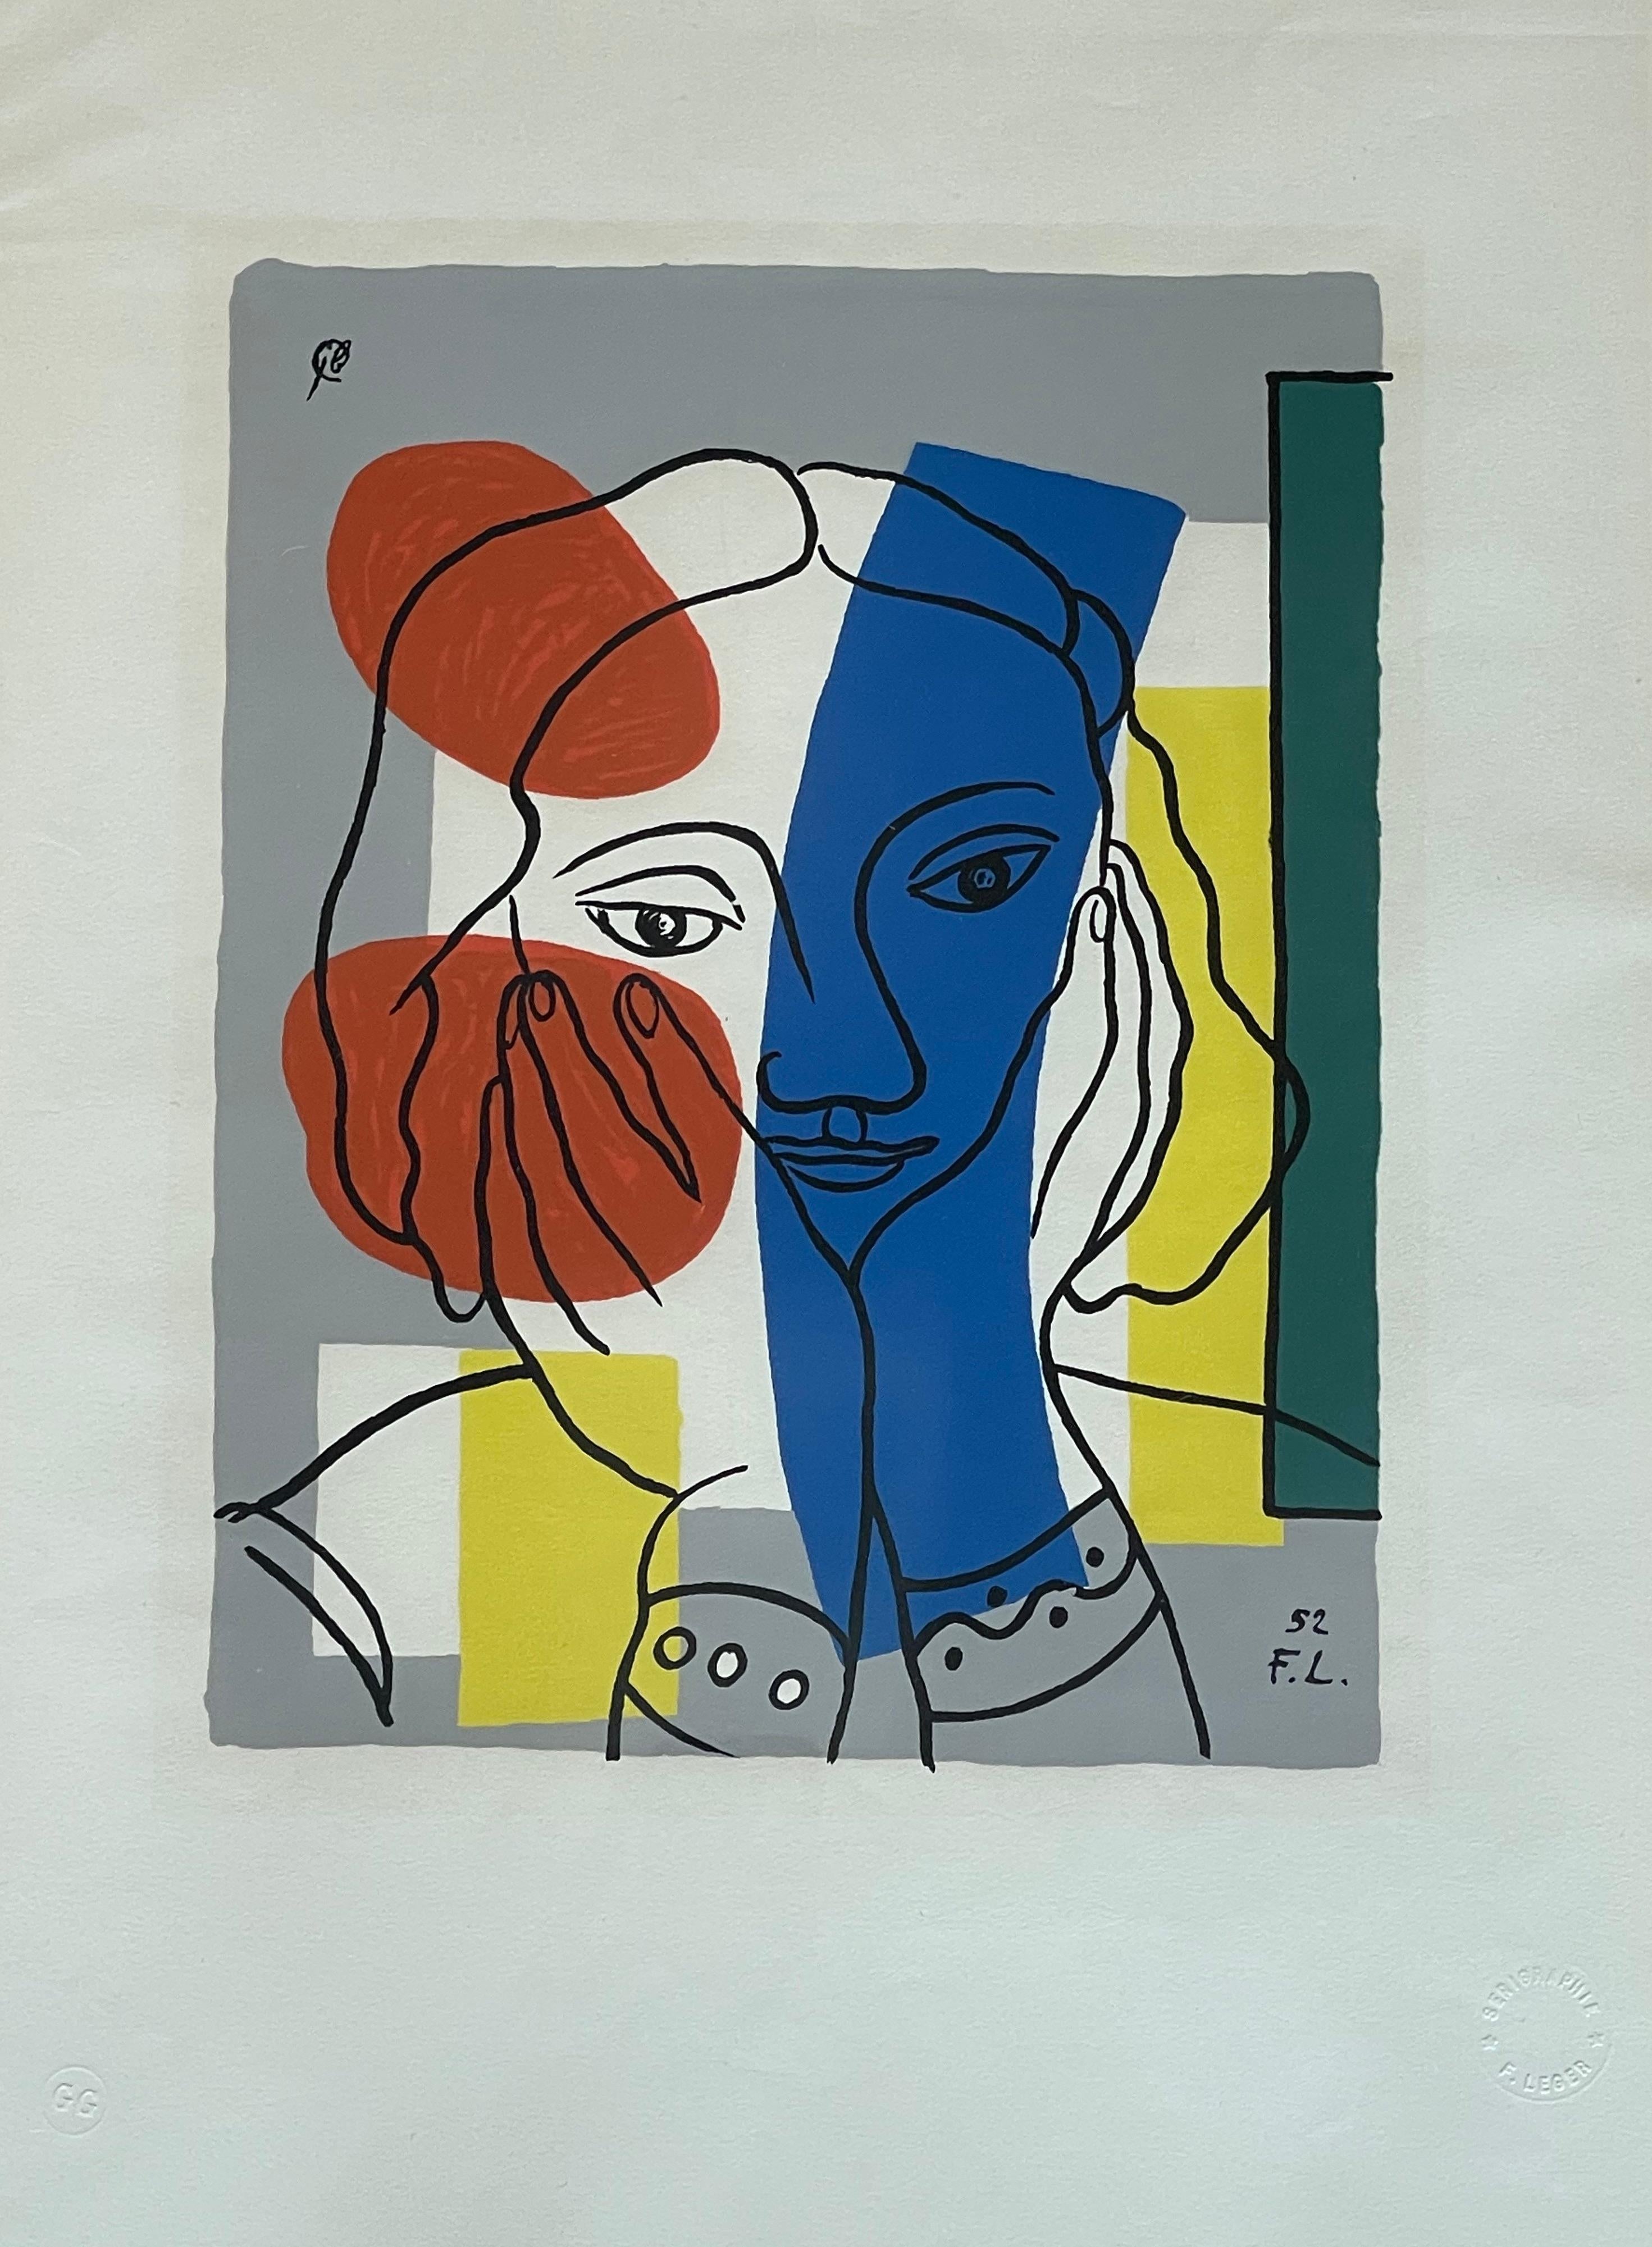 Originalgemälde des berühmten Kubisten und Pop-Art-Malers Fernard Léger
Beglaubigt, unterzeichnet und gestempelt 
Quelle: Martyn Lawrence Bullard aus Paris